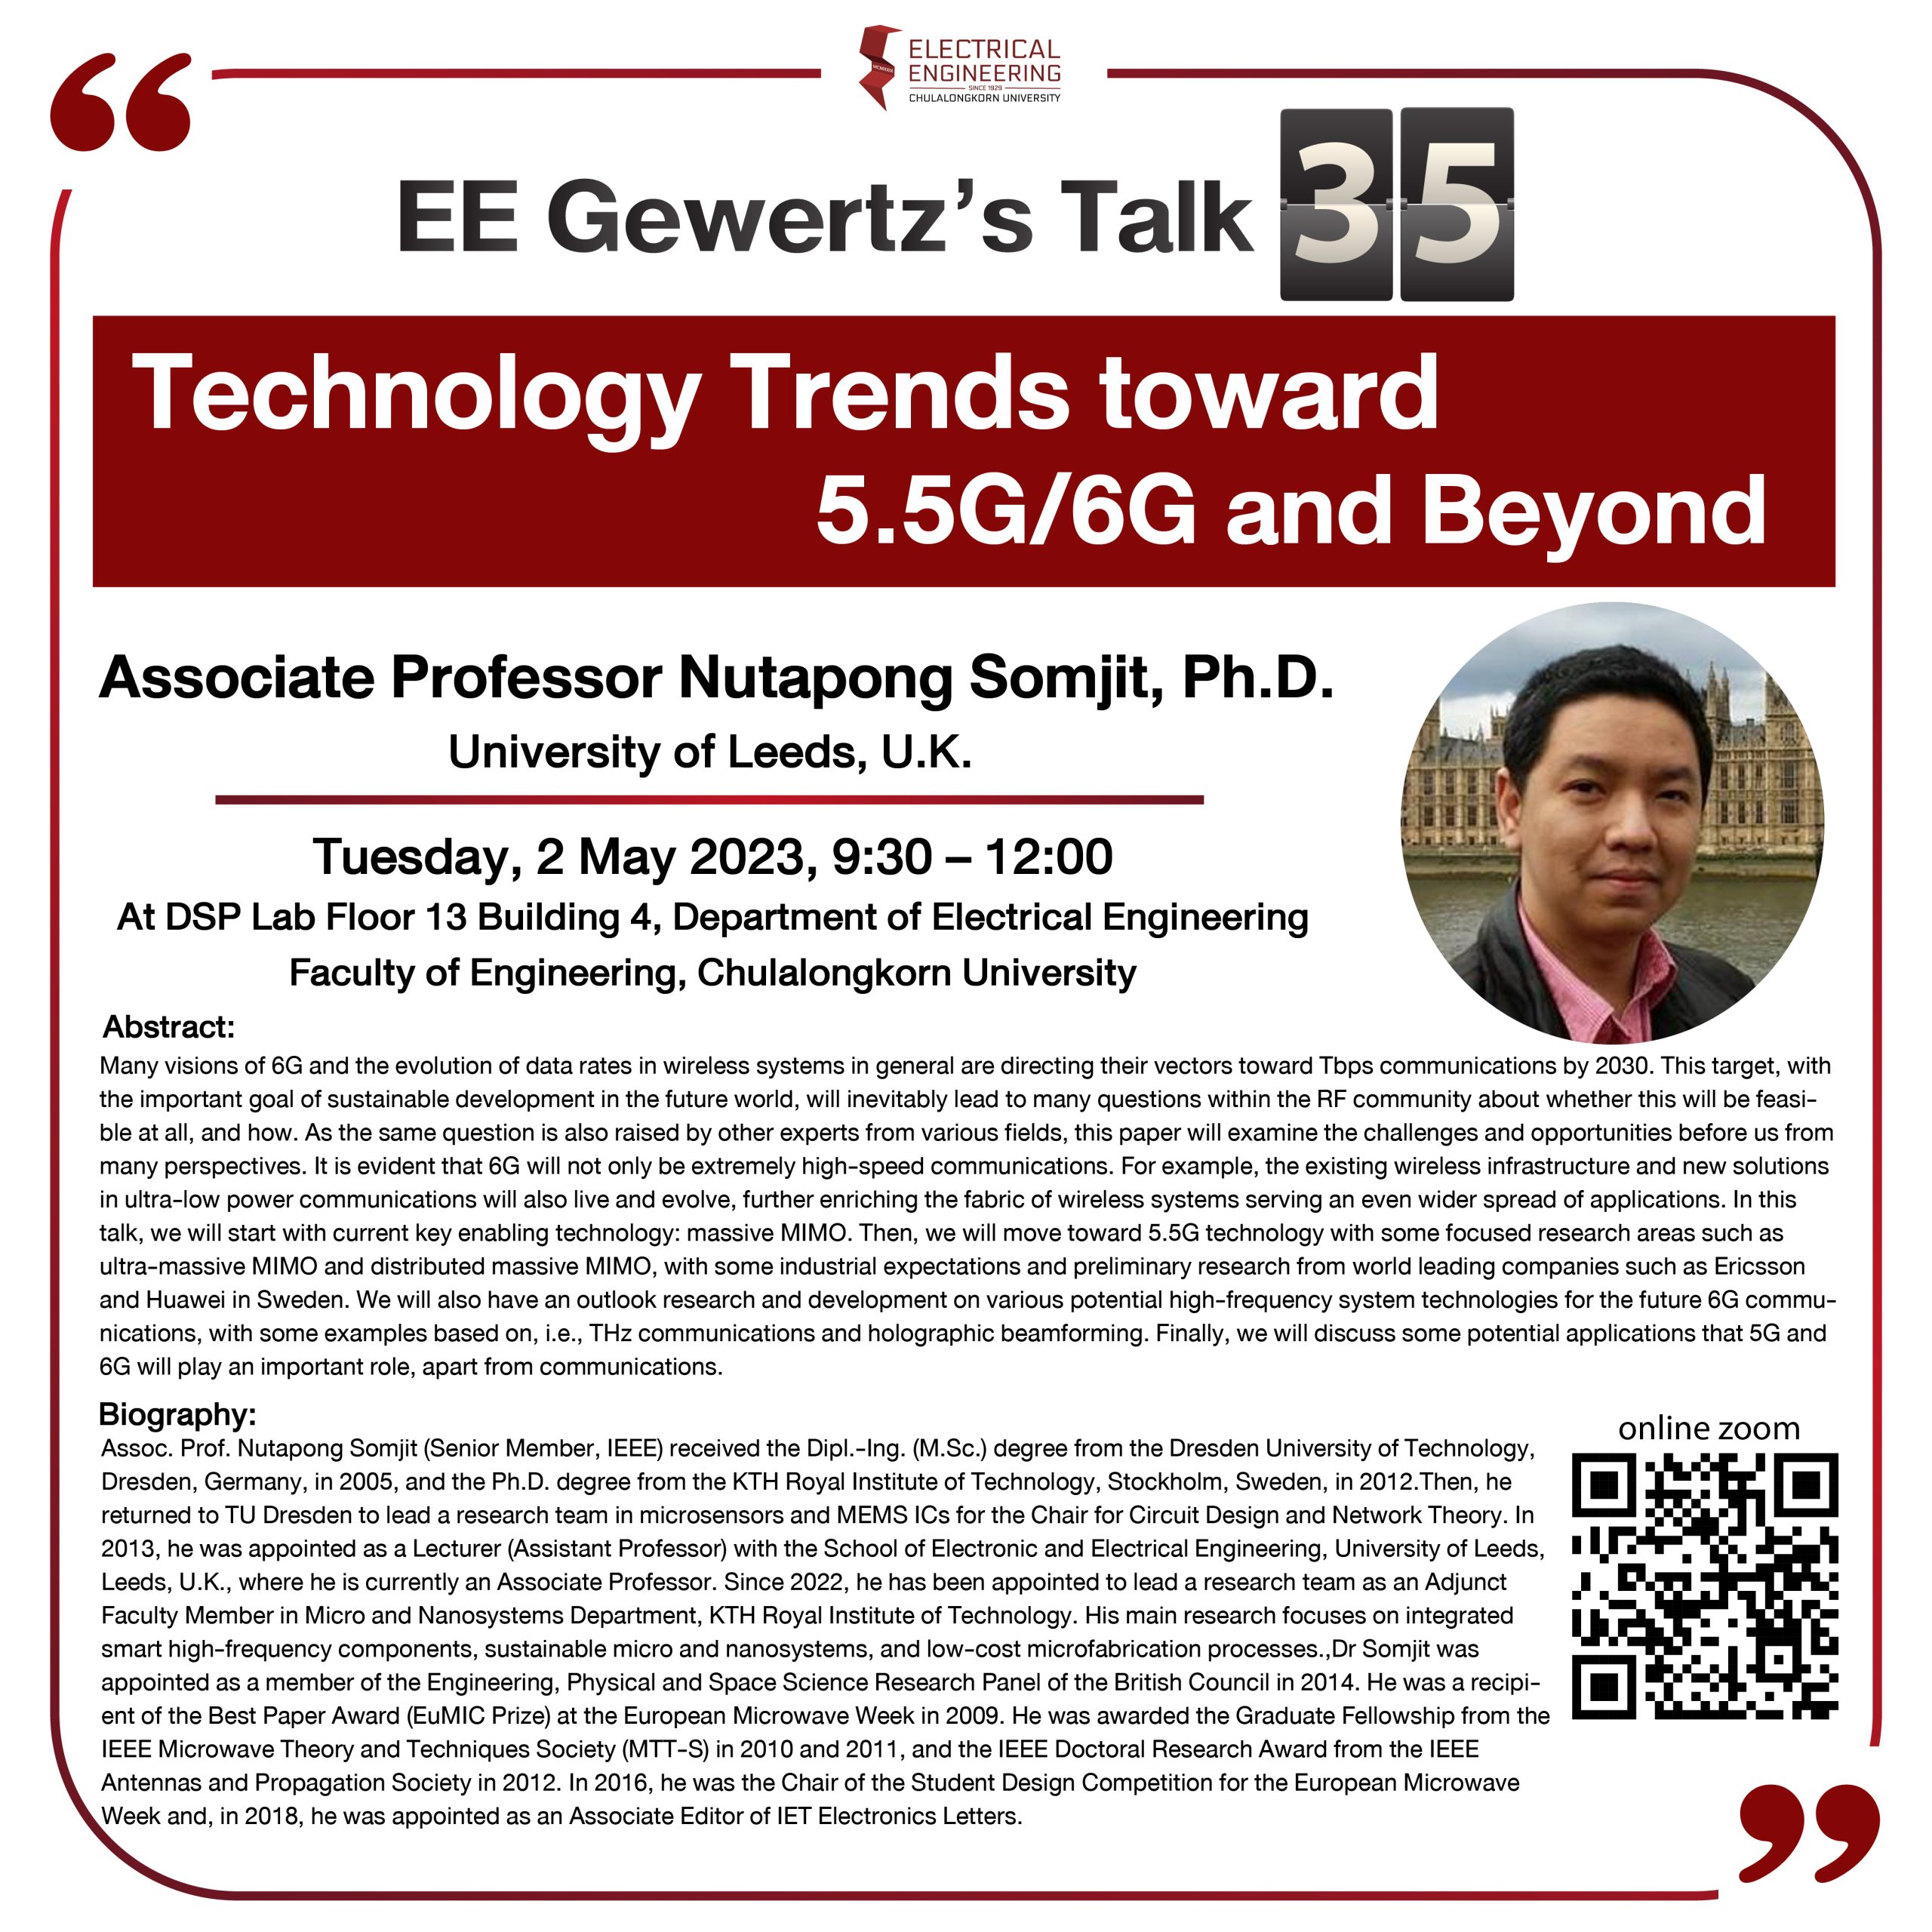 EE Gewert Talk 35 "Technology Trends toward 5.5G/6G and Beyond” by Associate Professor Nutapong Somjit, Ph.D. University of Leeds, U.K.